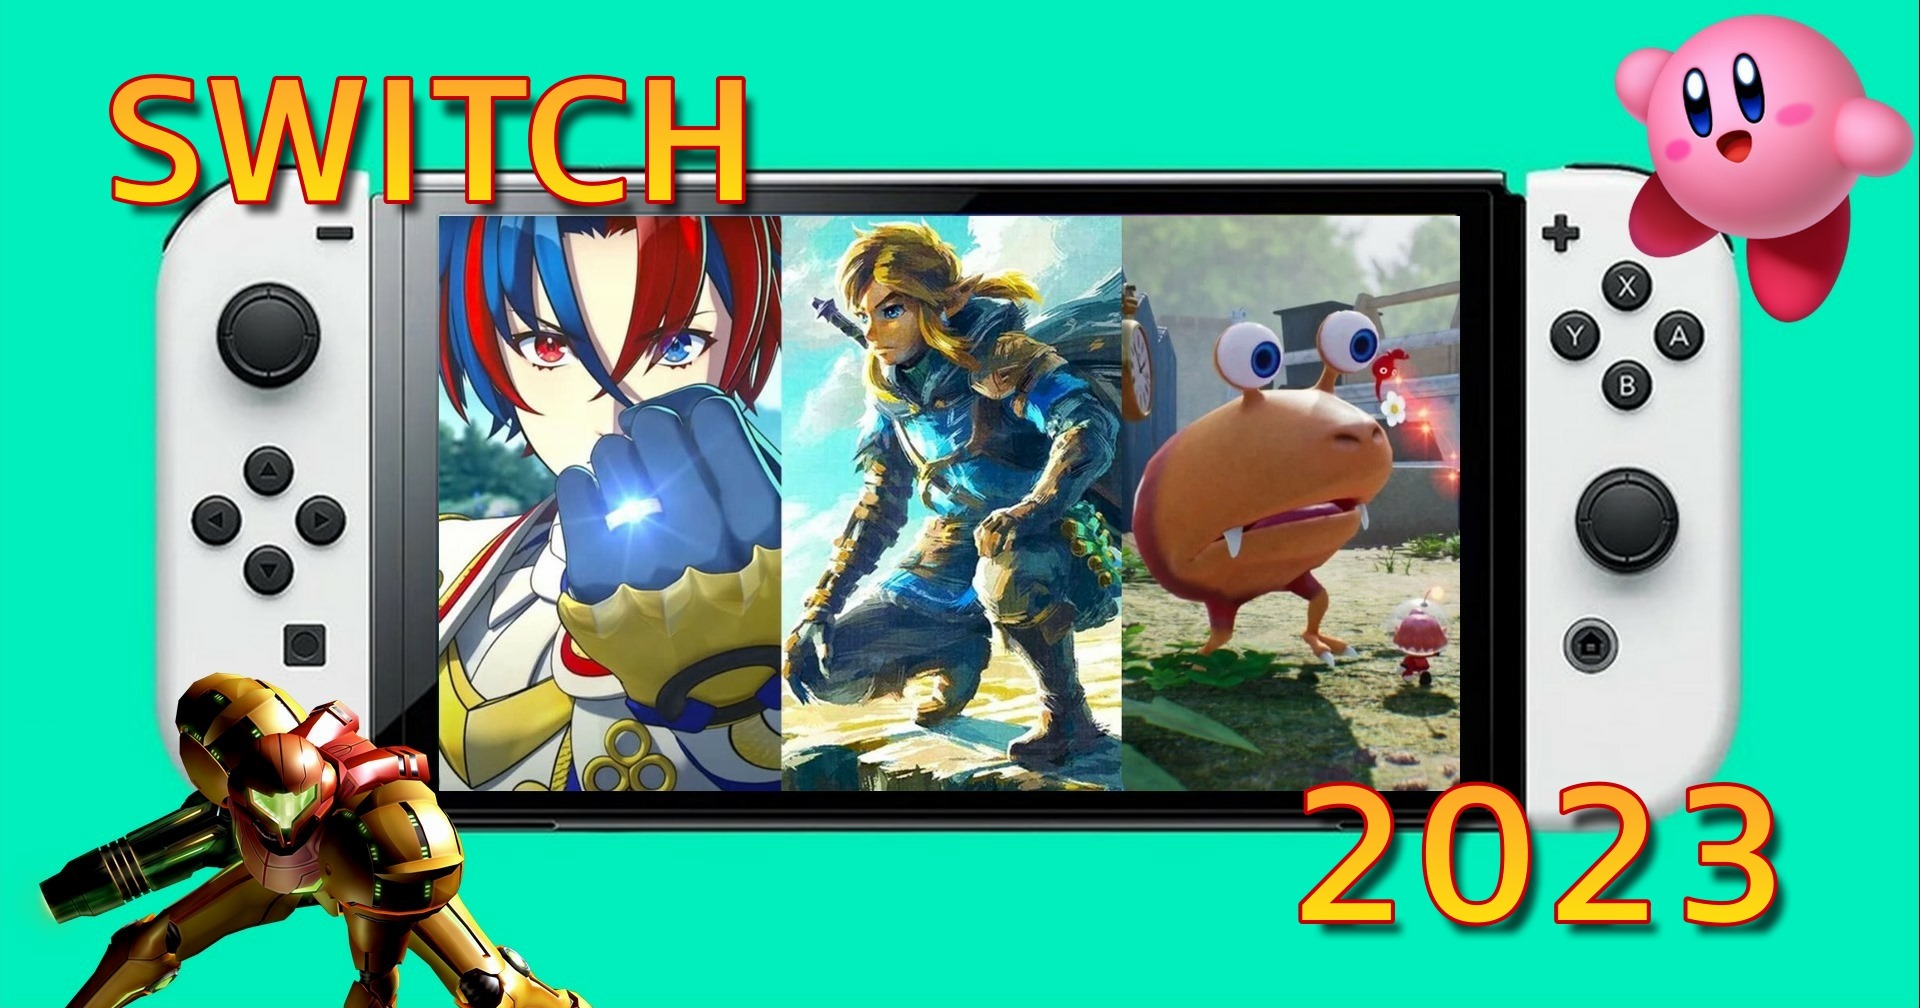 [บทความ] รวมเกมน่าเล่นบน Nintendo Switch ที่ออกในปี 2023